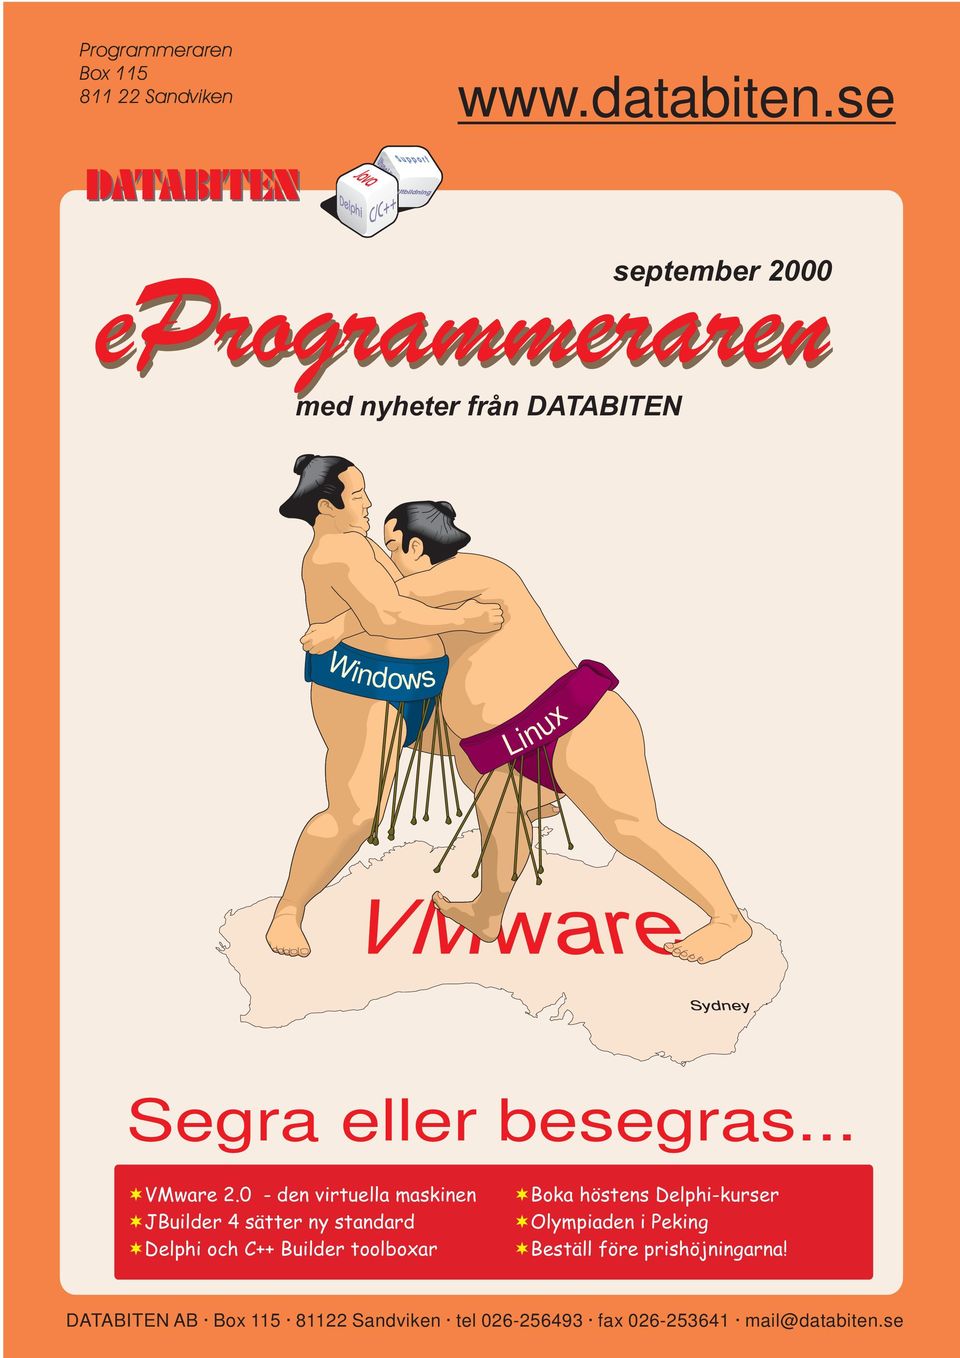 besegras... VMware 2.